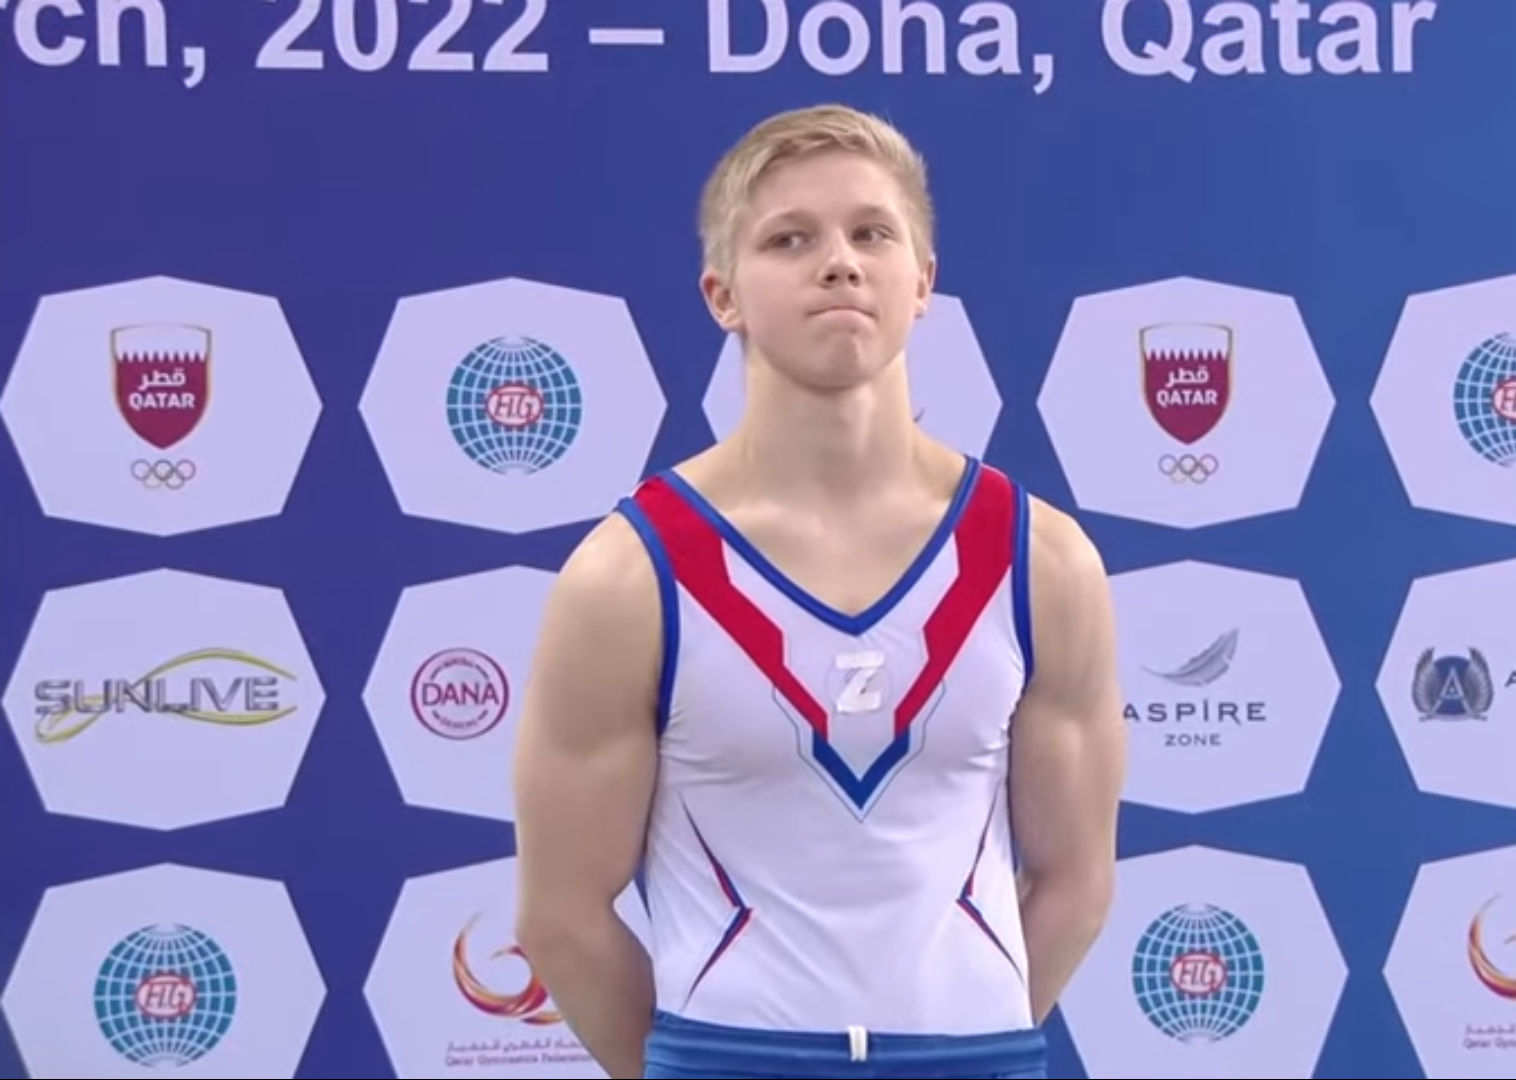 Российская гимнастка поднимается на пьедестал с Z на груди рядом с украинкой